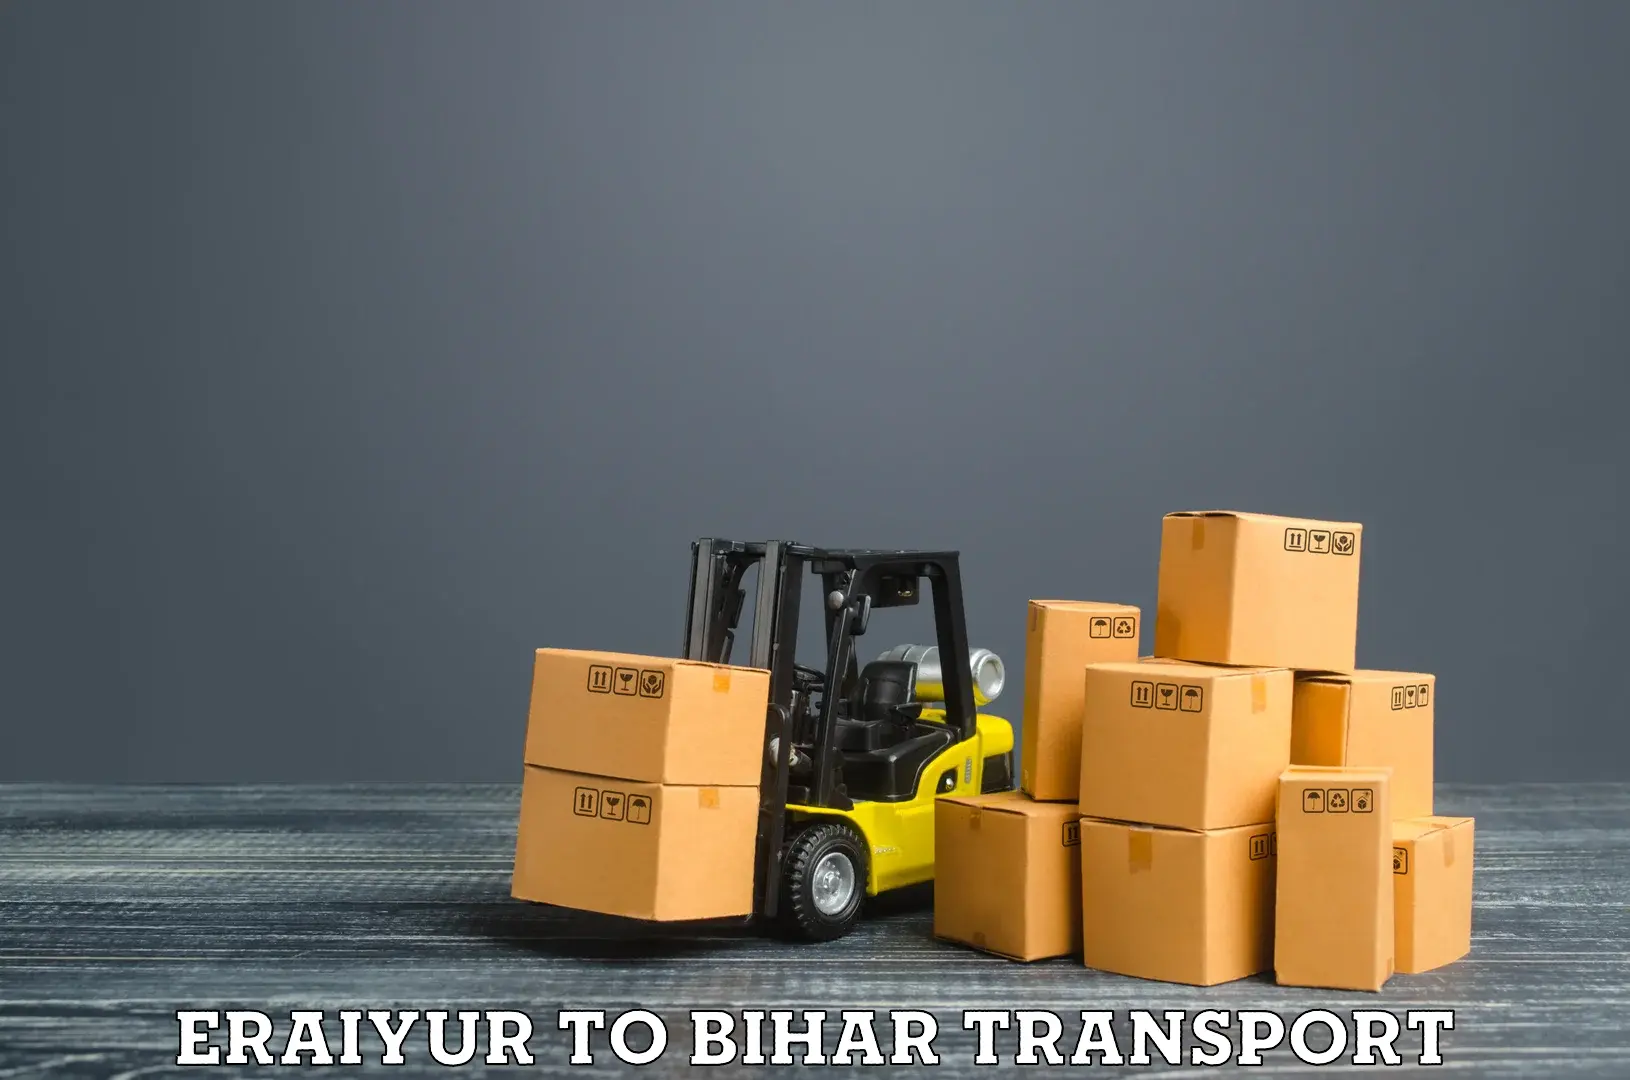 Vehicle transport services Eraiyur to Dhaka